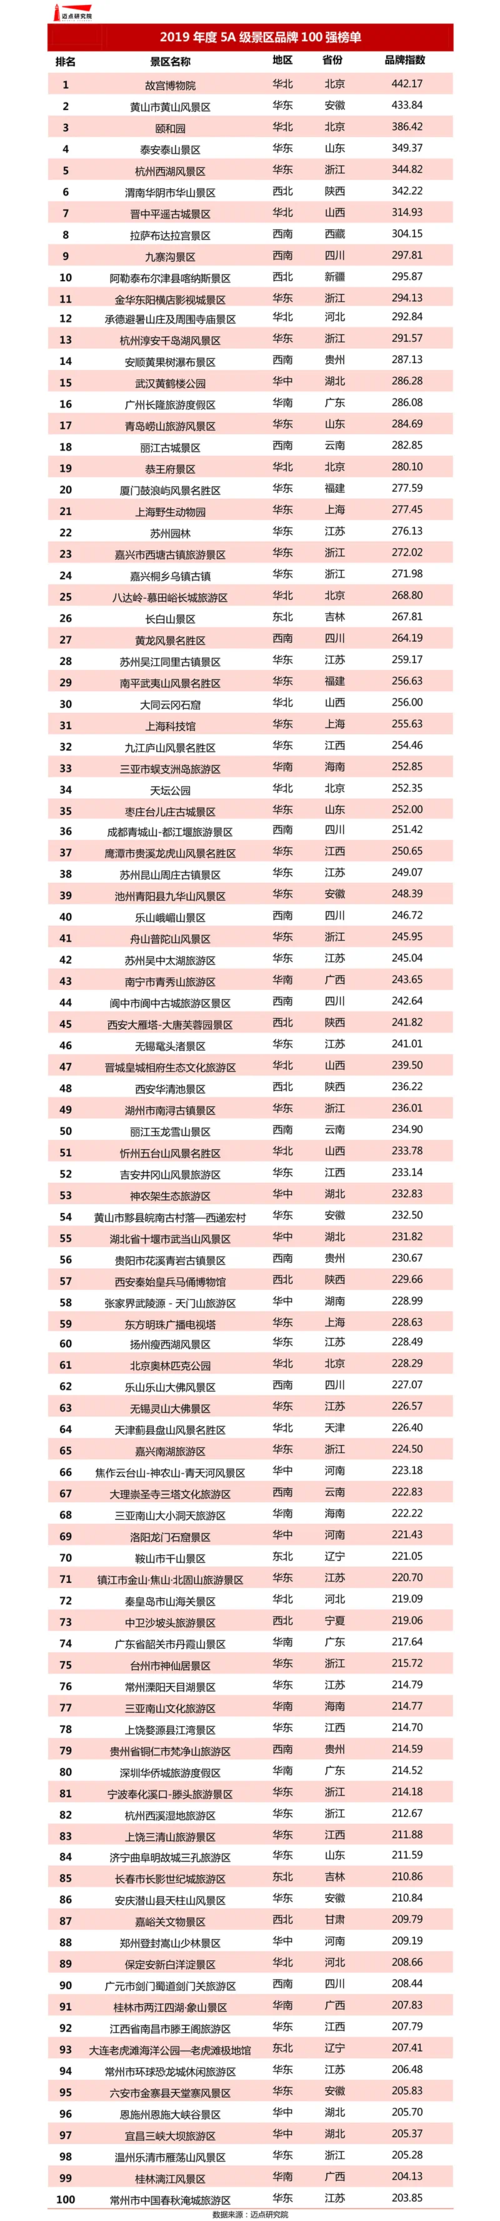 2019年中国5a级景区年度百强榜单发布